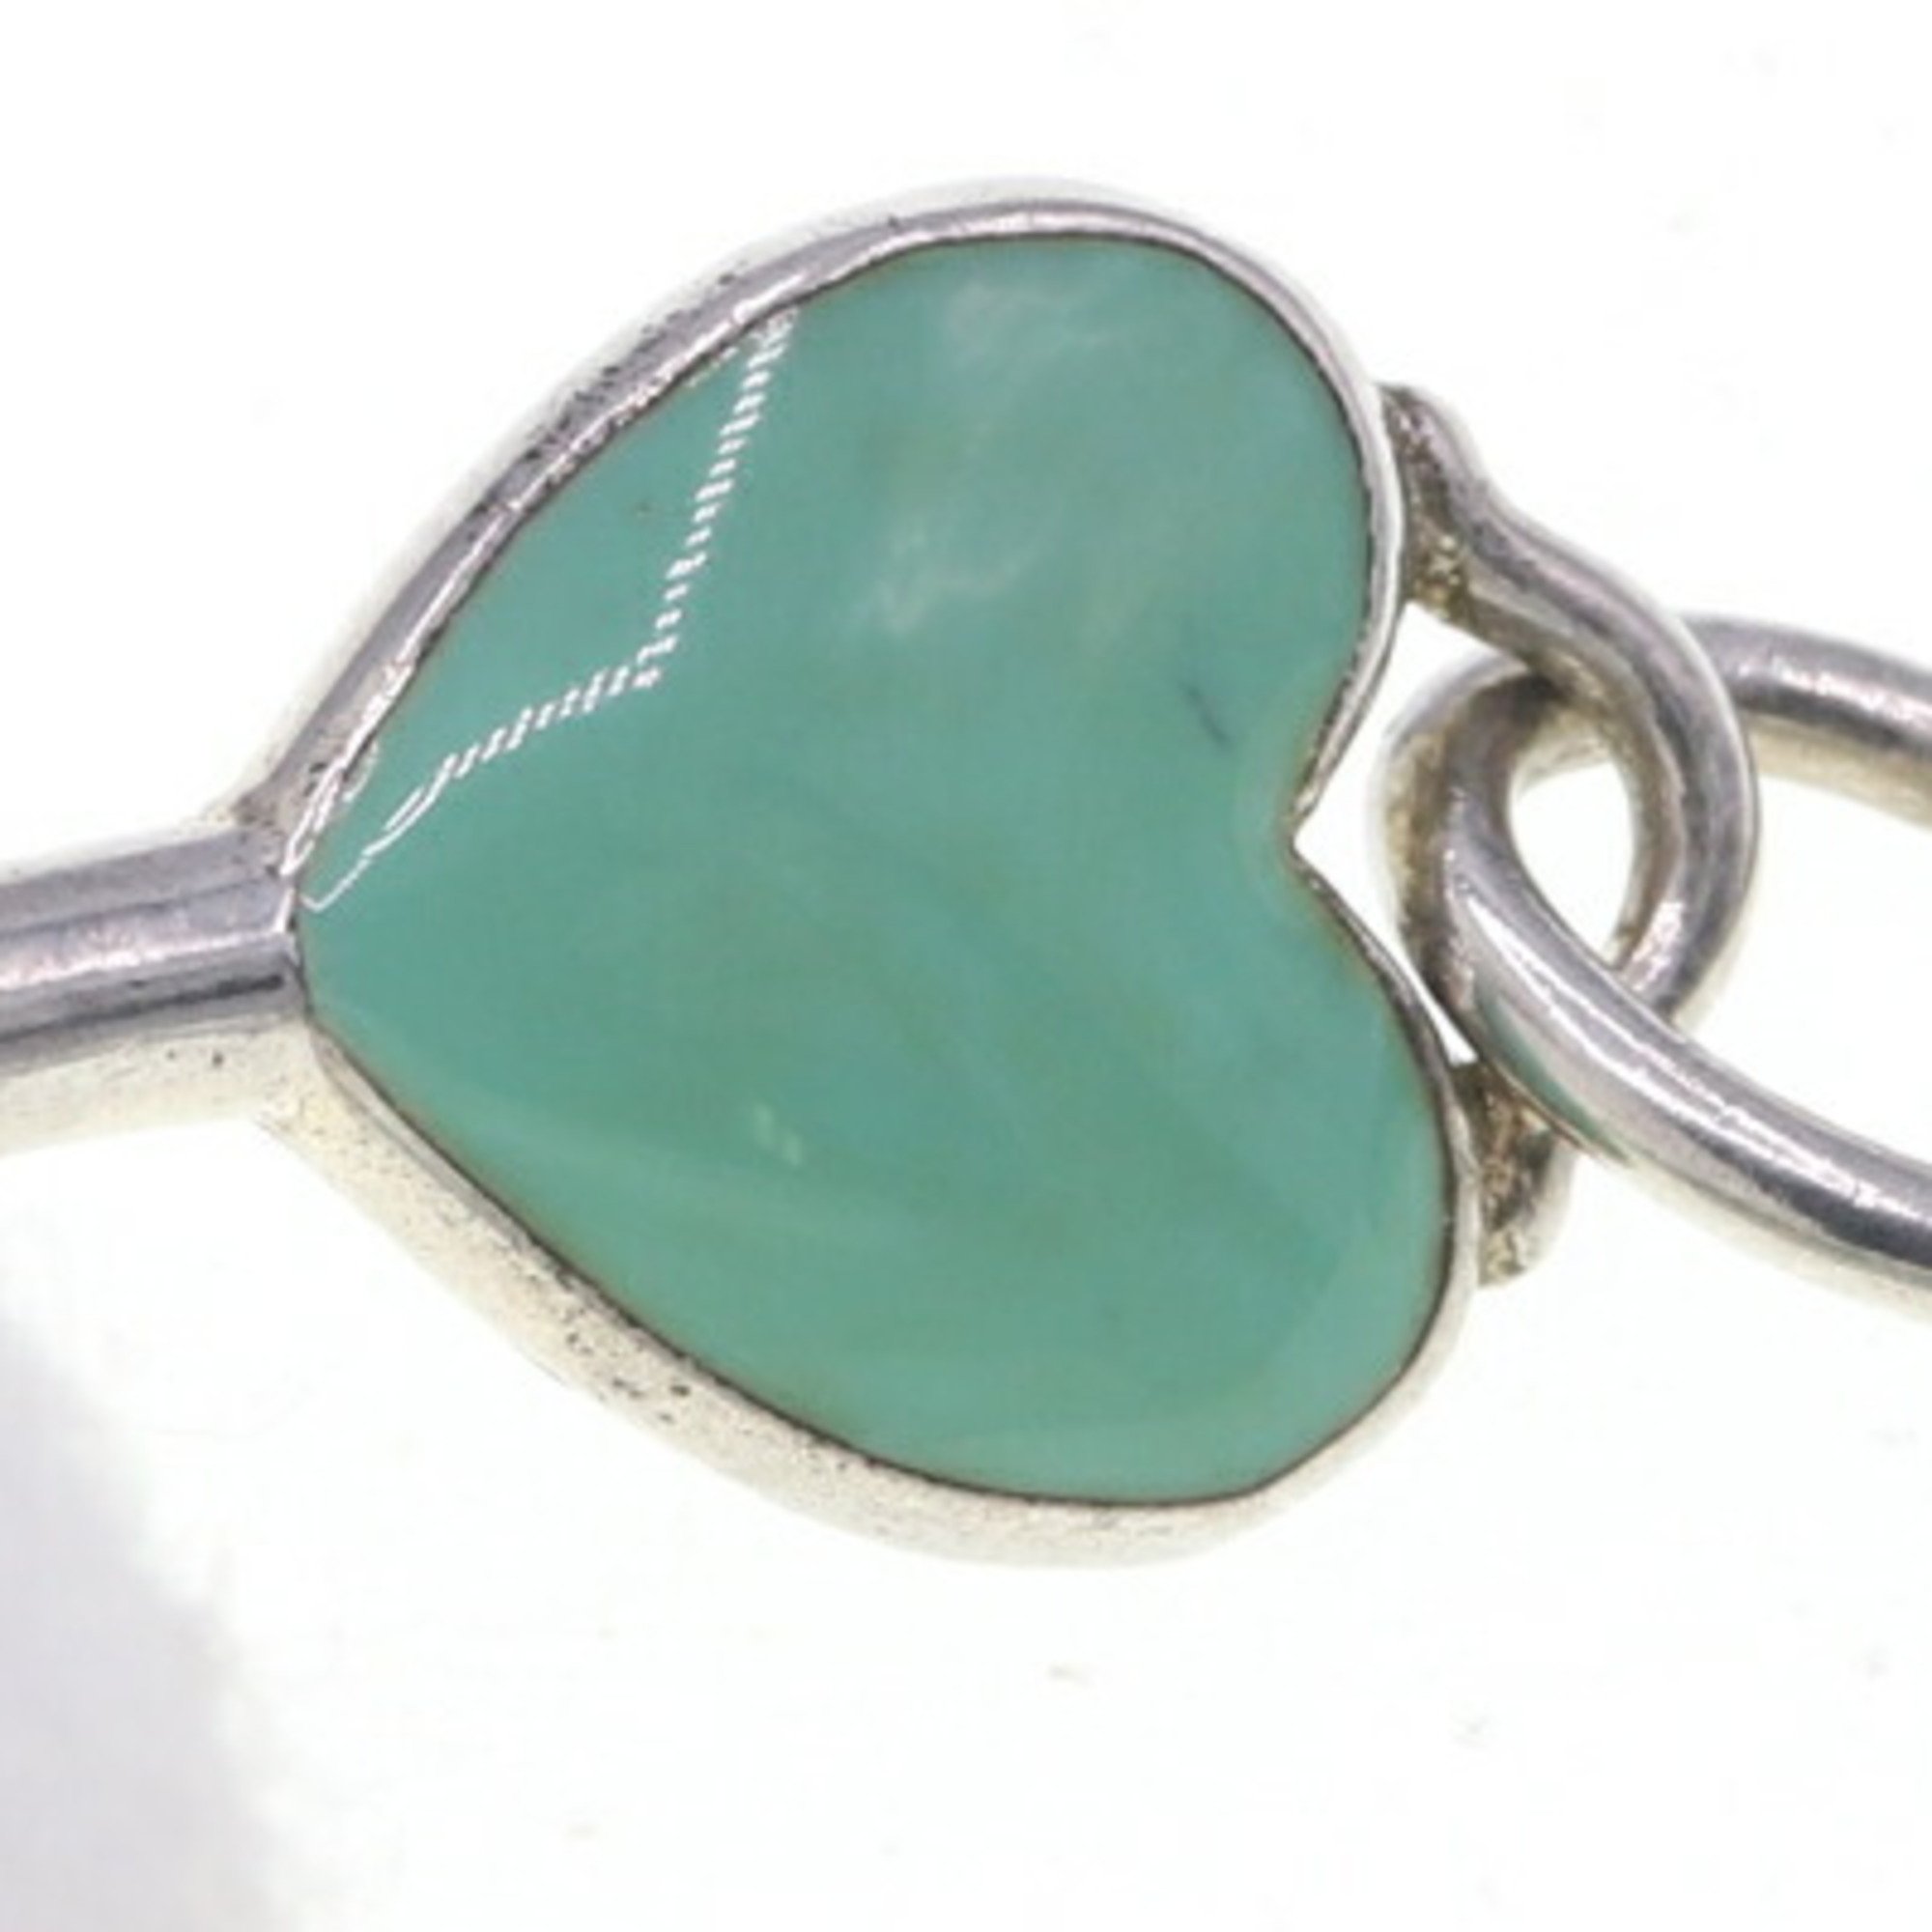 Tiffany Pendant Top Heart Key SV Sterling Silver 925 Enamel Women's Necklace Charm Blue TIFFANY&Co.